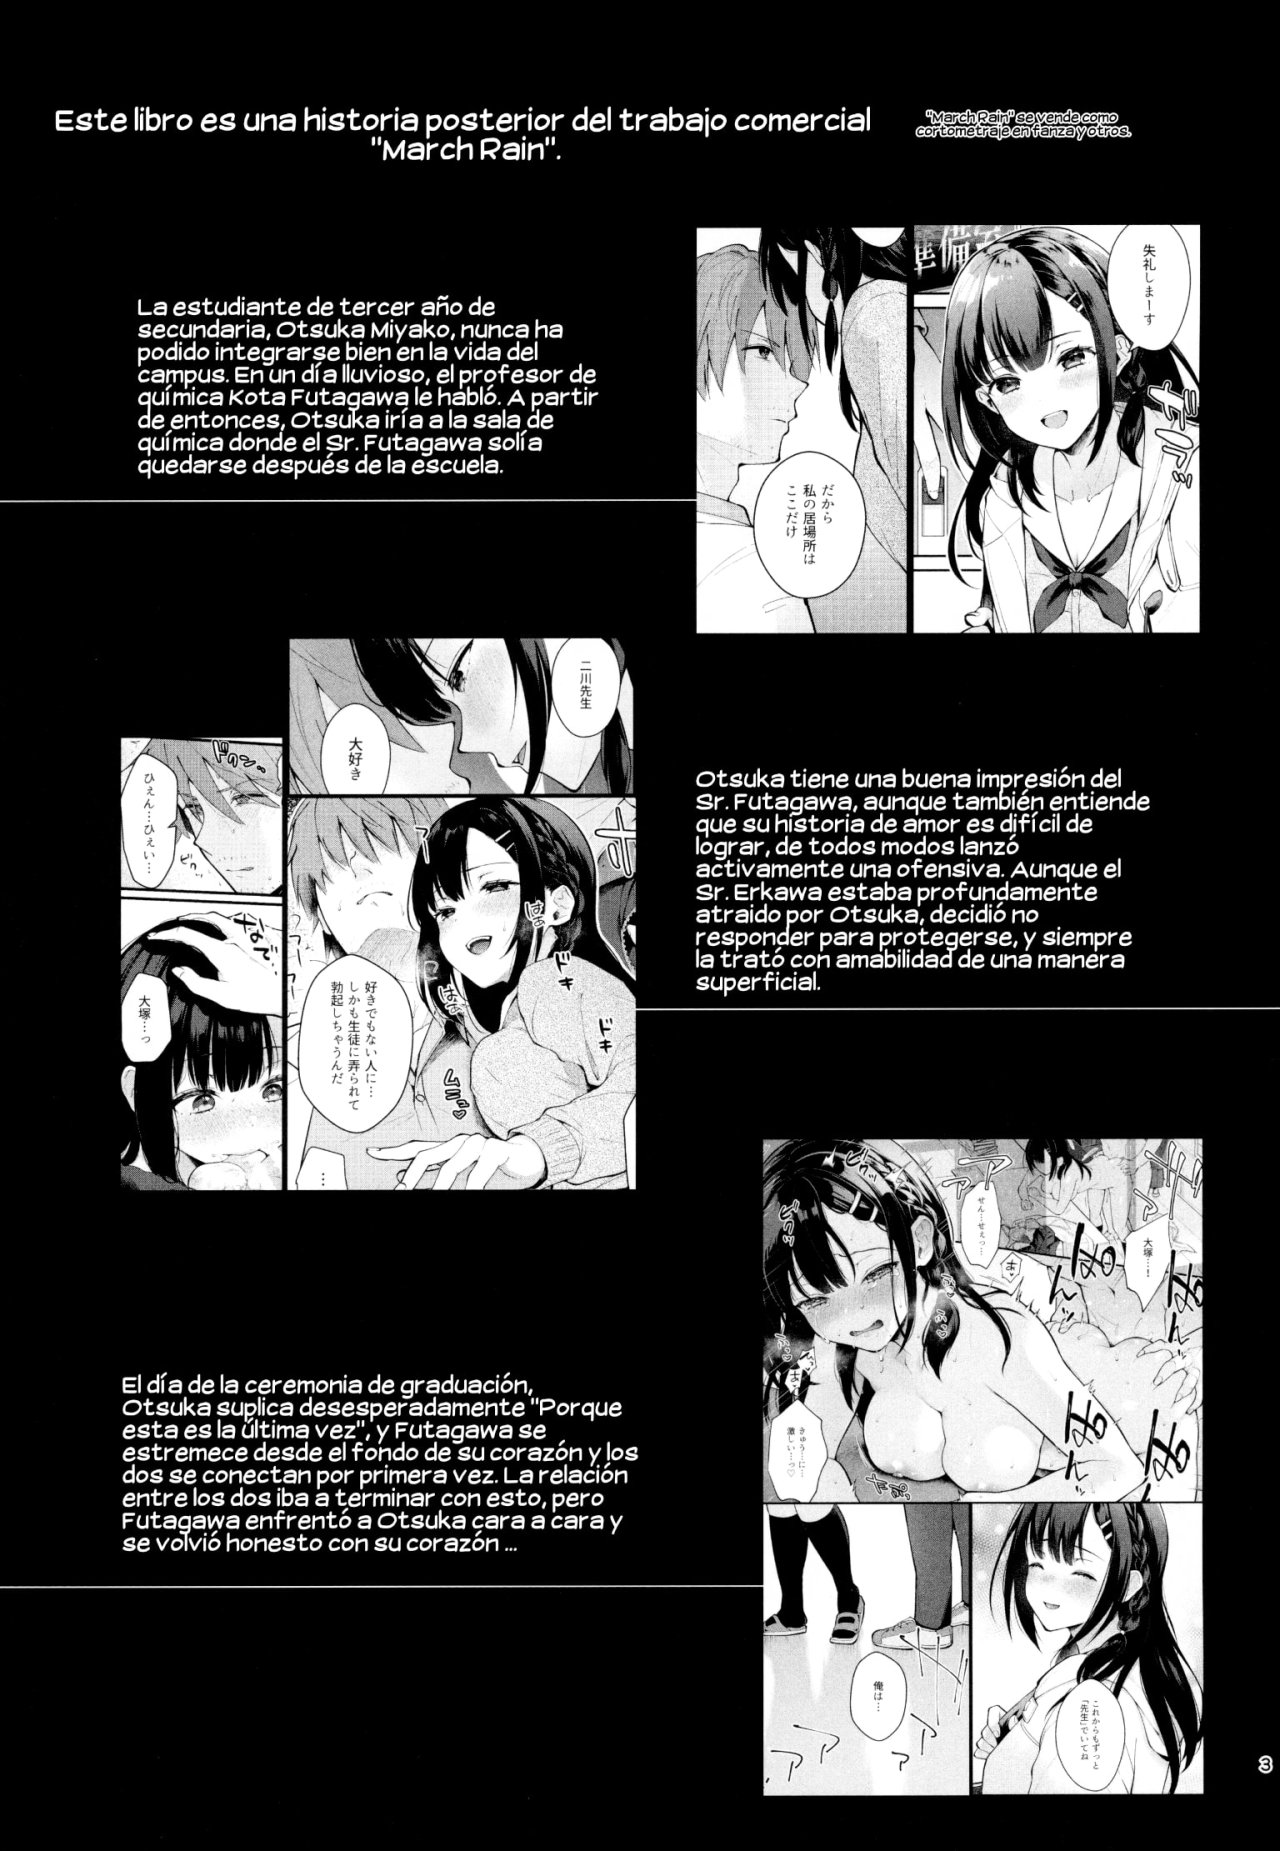 Sunshower-JK Miyako no Valentine Manga 3 - 1